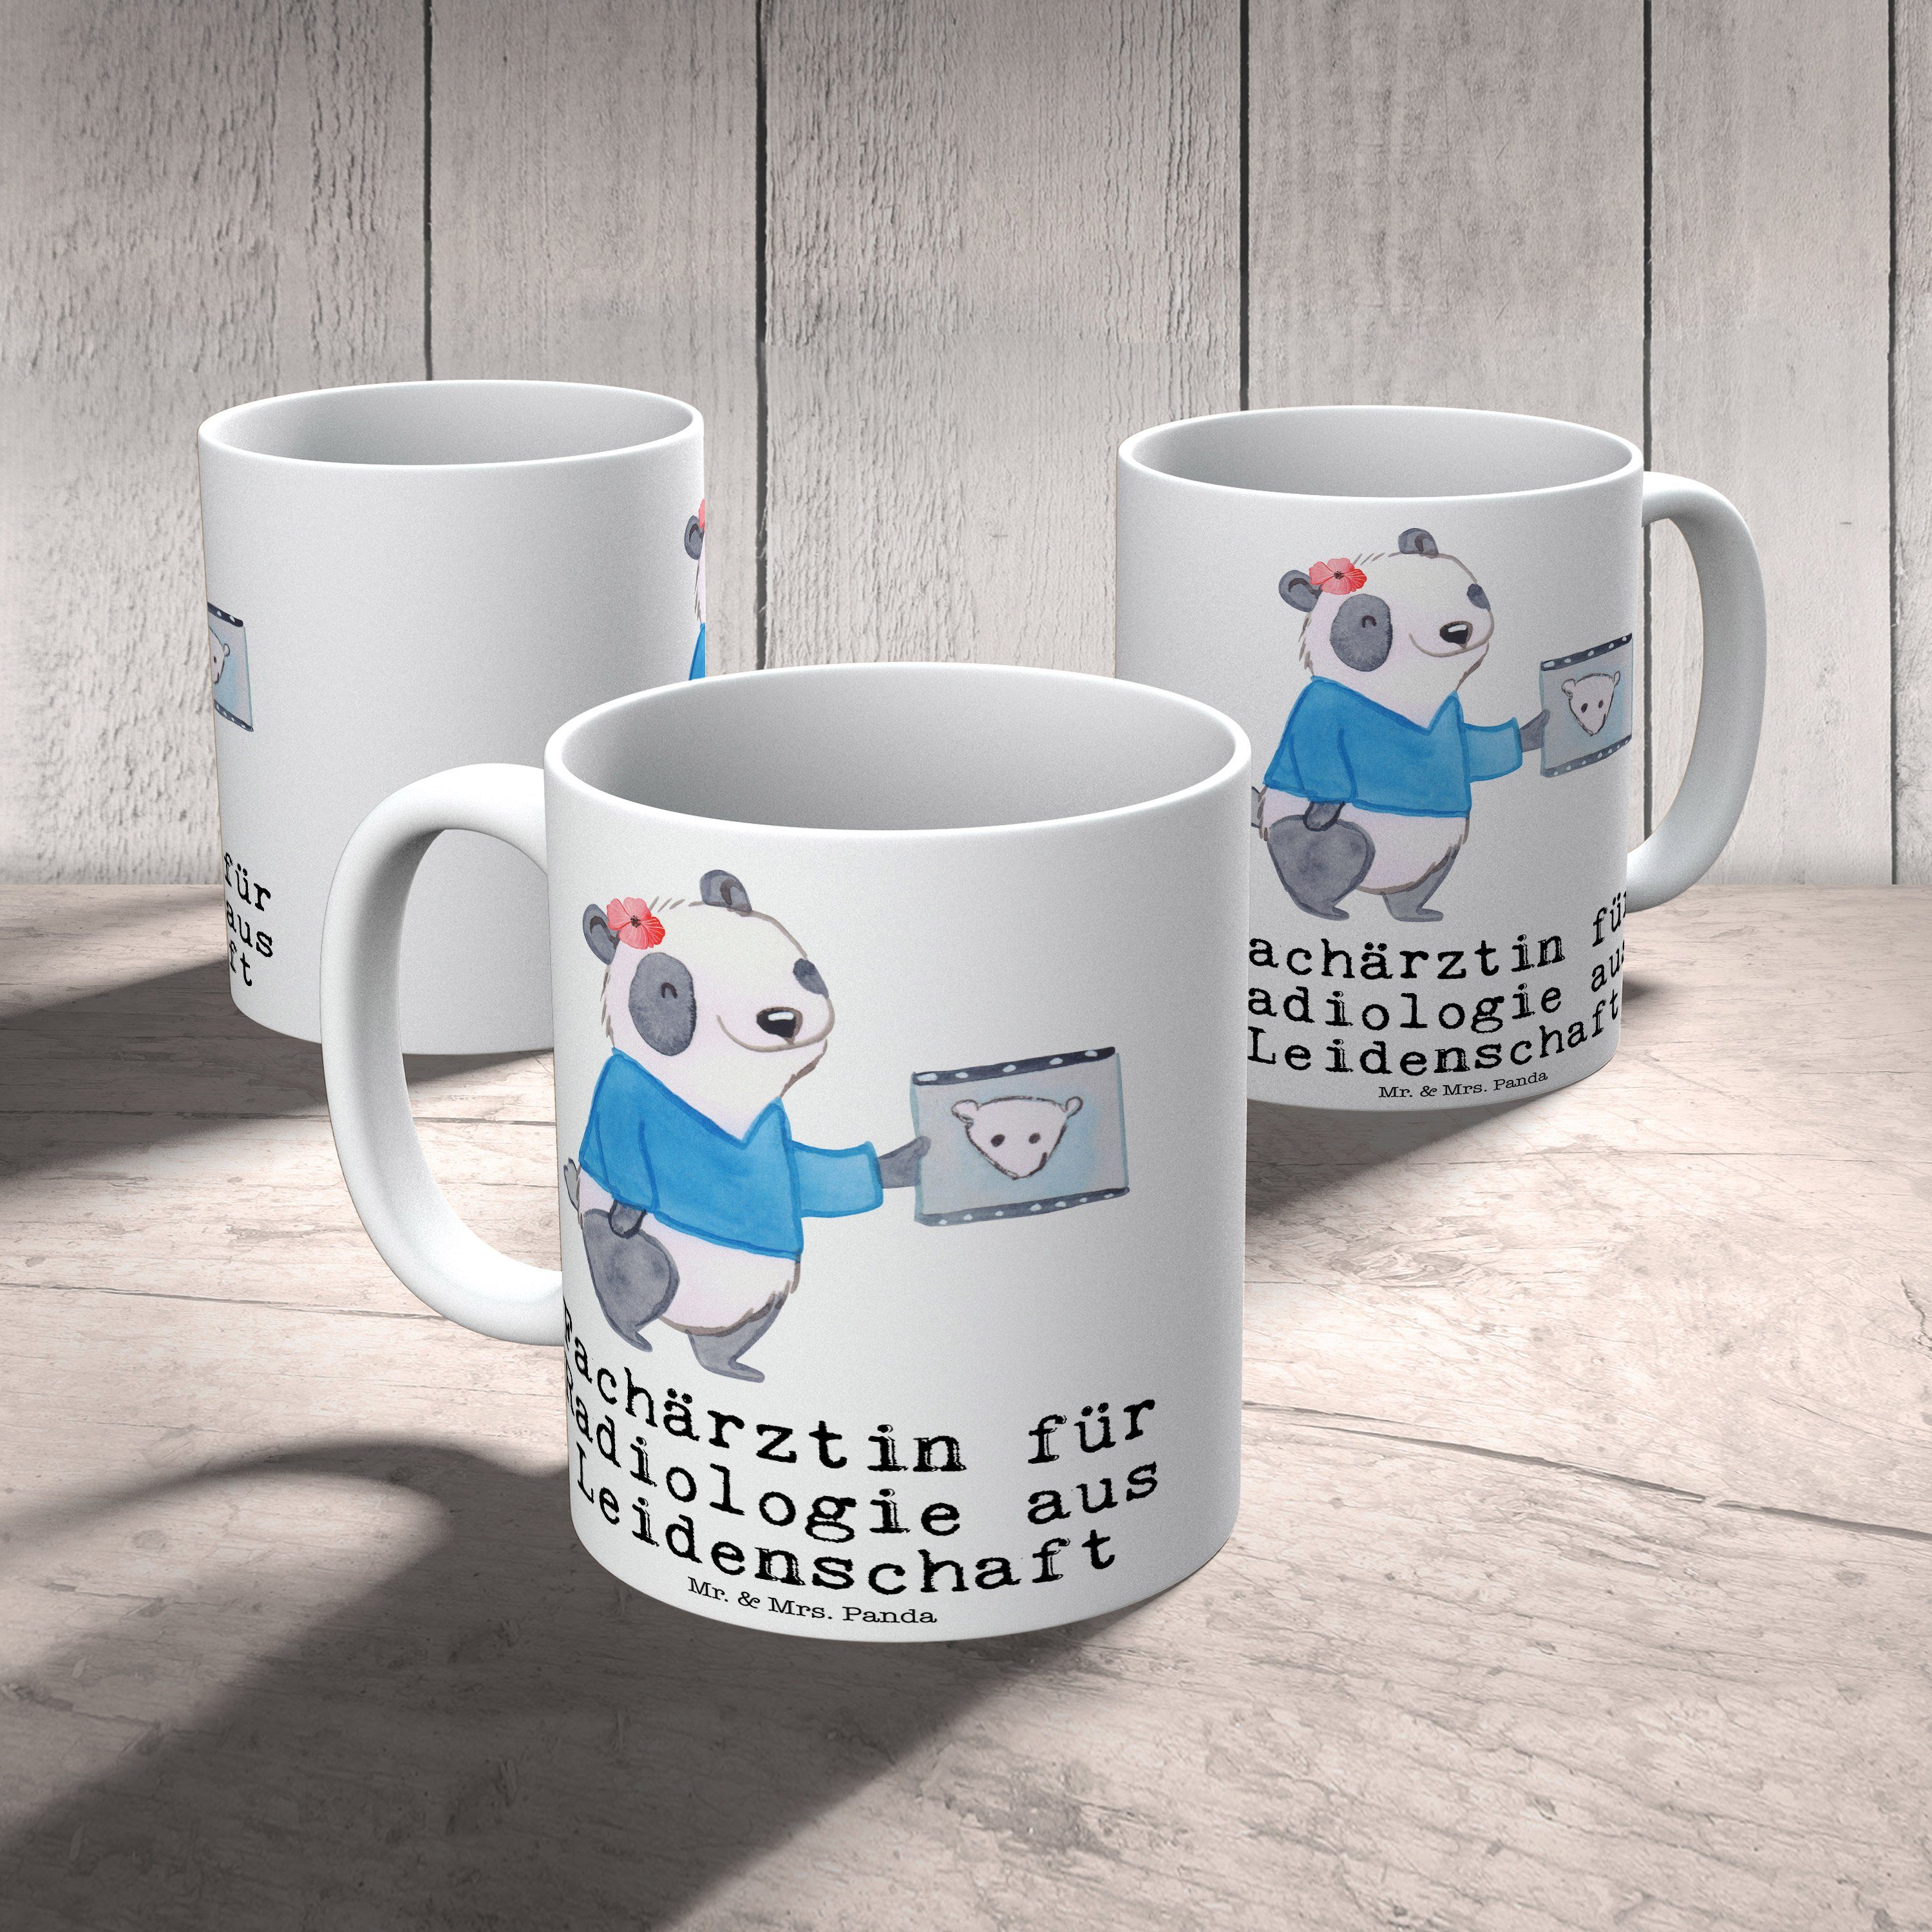 Mr. & Mrs. für Geschenk, Panda - Keramik Fachärztin Weiß aus Radiologie Leidenschaft Tasse - Kaffeeb